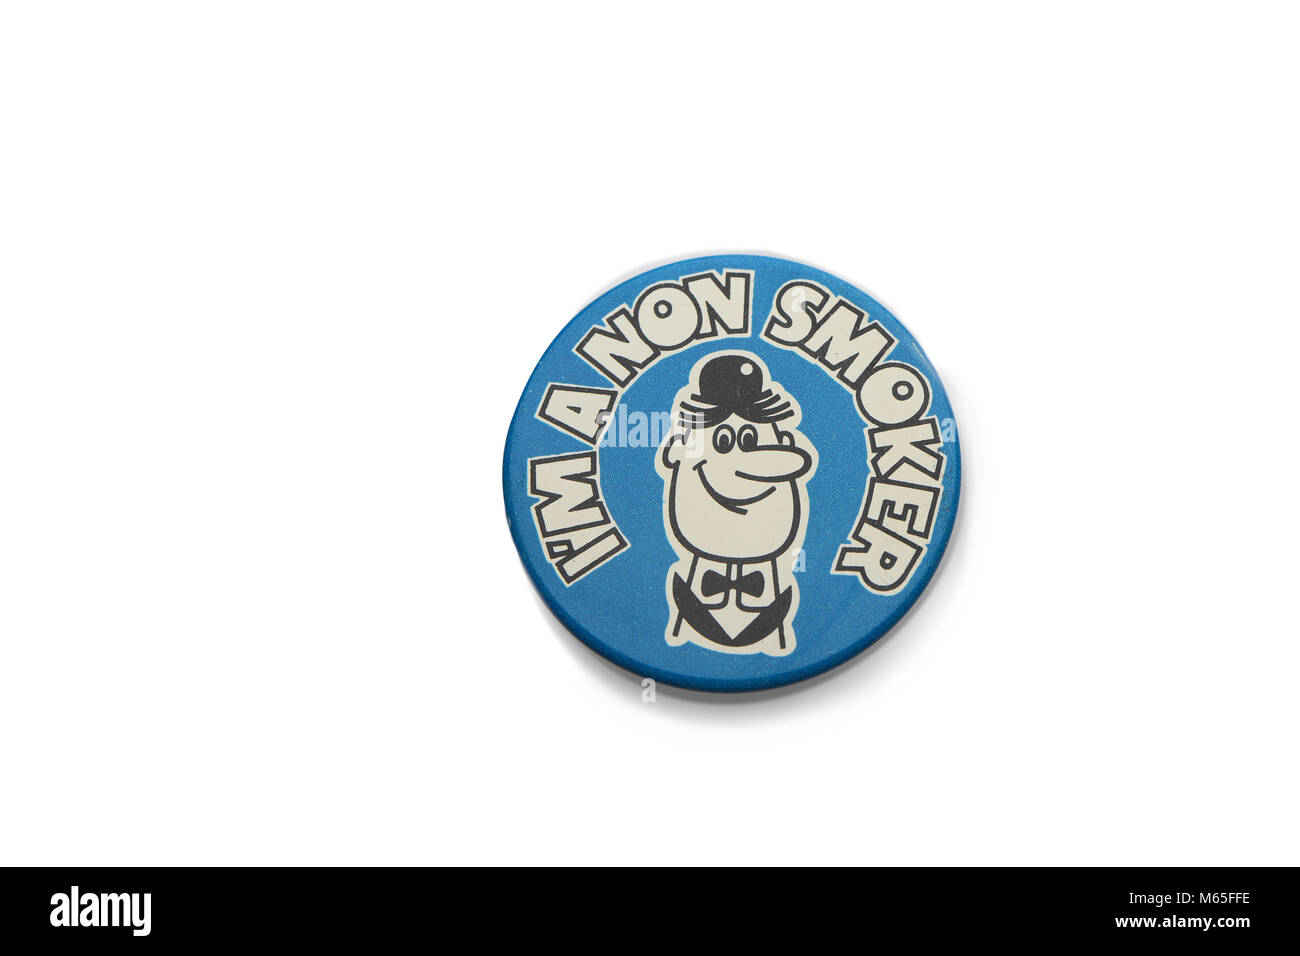 A 1970s era tin badge Im a non smoker collectable on a white background. Stock Photo